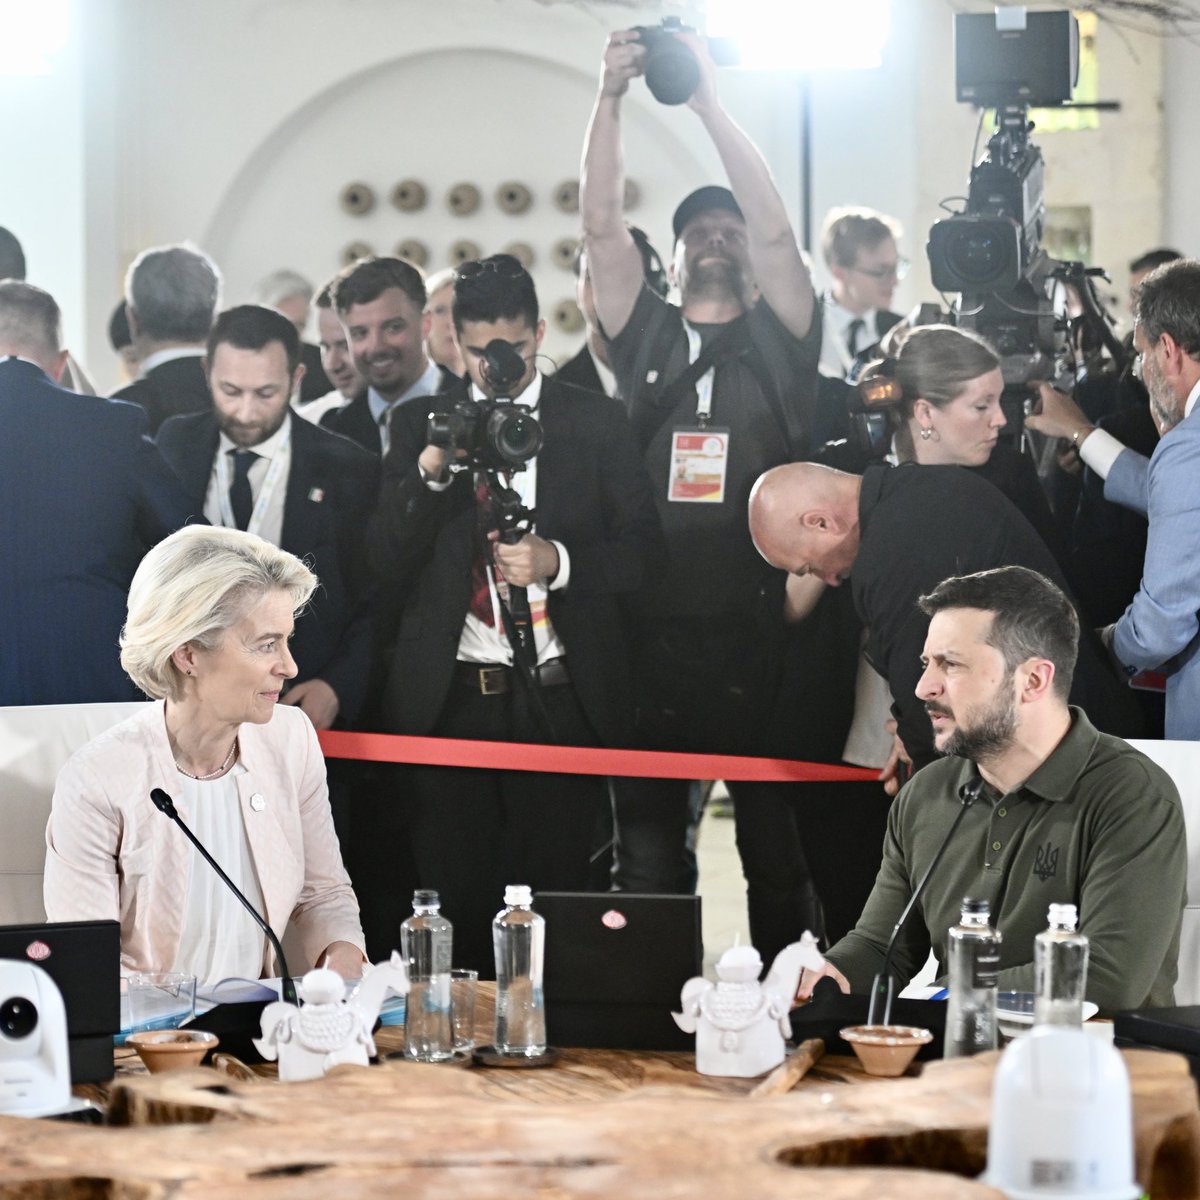 Ursula von der Leyen: O G7 concordou em conceder à Ucrânia empréstimos no valor de cerca de 50 mil milhões de dólares até ao final do ano. Usaremos os lucros inesperados dos activos soberanos da Rússia para os reembolsar. Isto baseia-se na ação da UE, onde já estamos a direcionar estes lucros inesperados para a defesa e reconstrução da Ucrânia